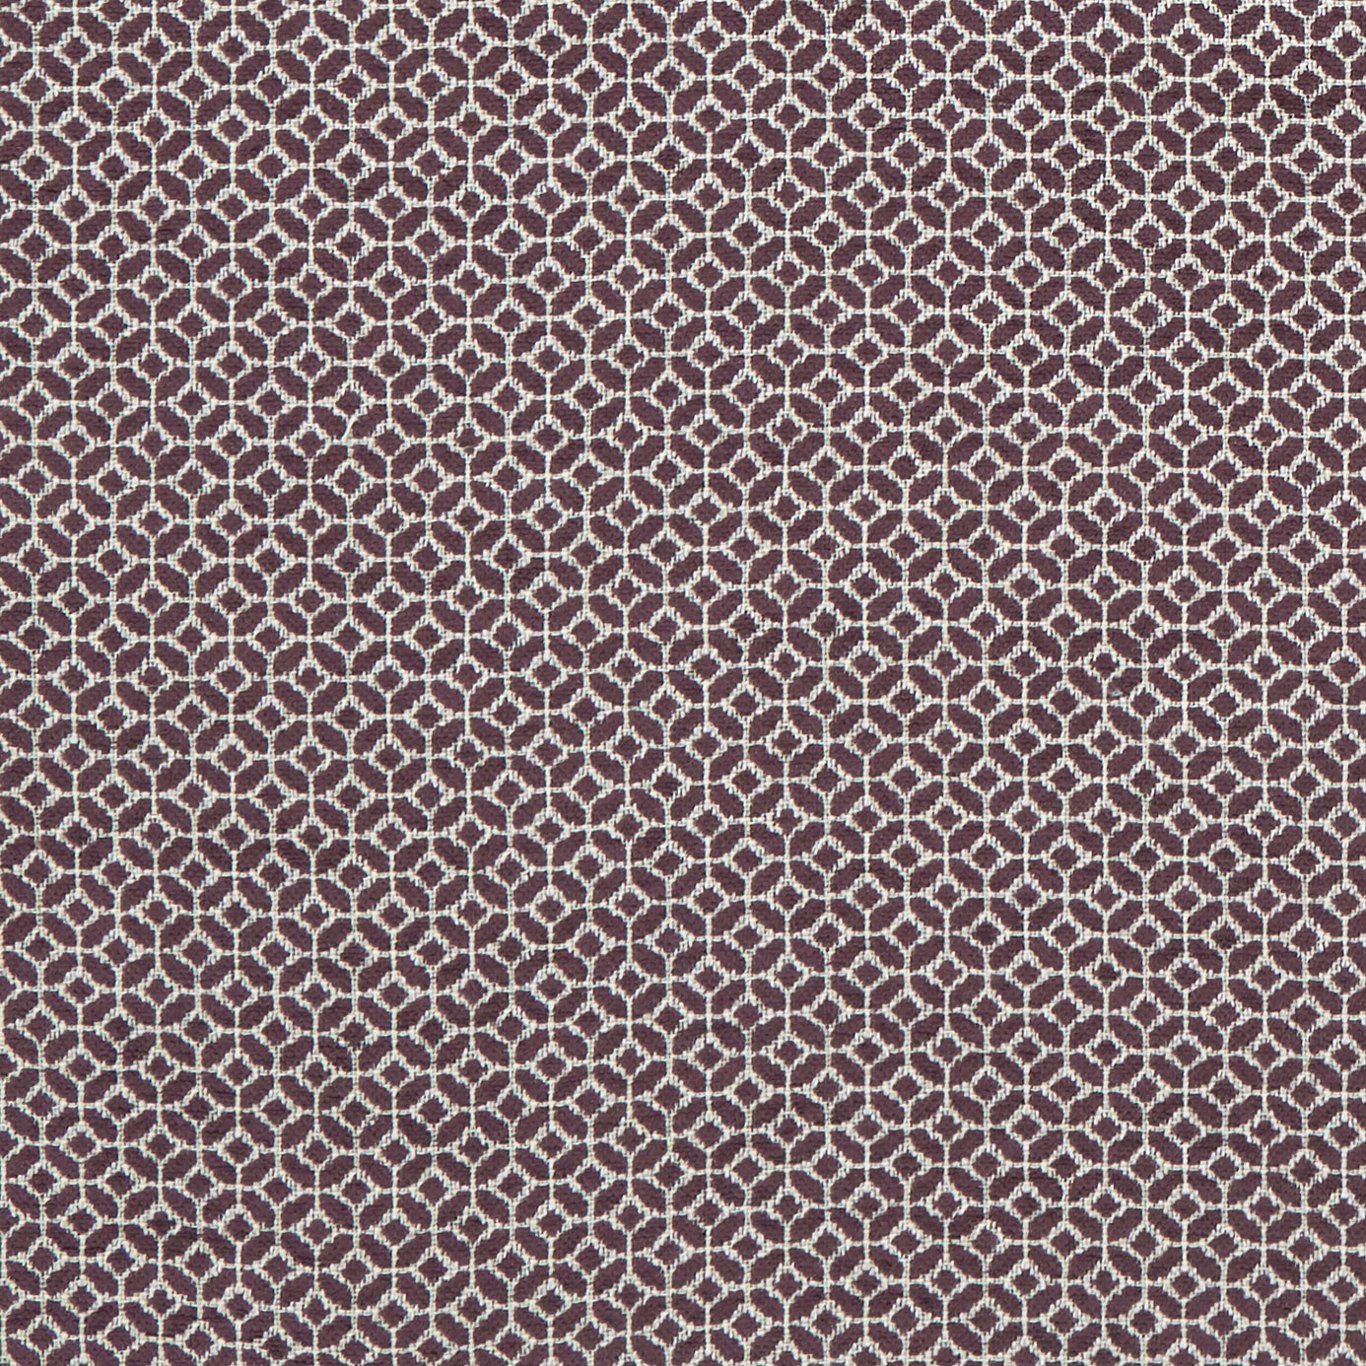 Orbit Damson Fabric by CNC